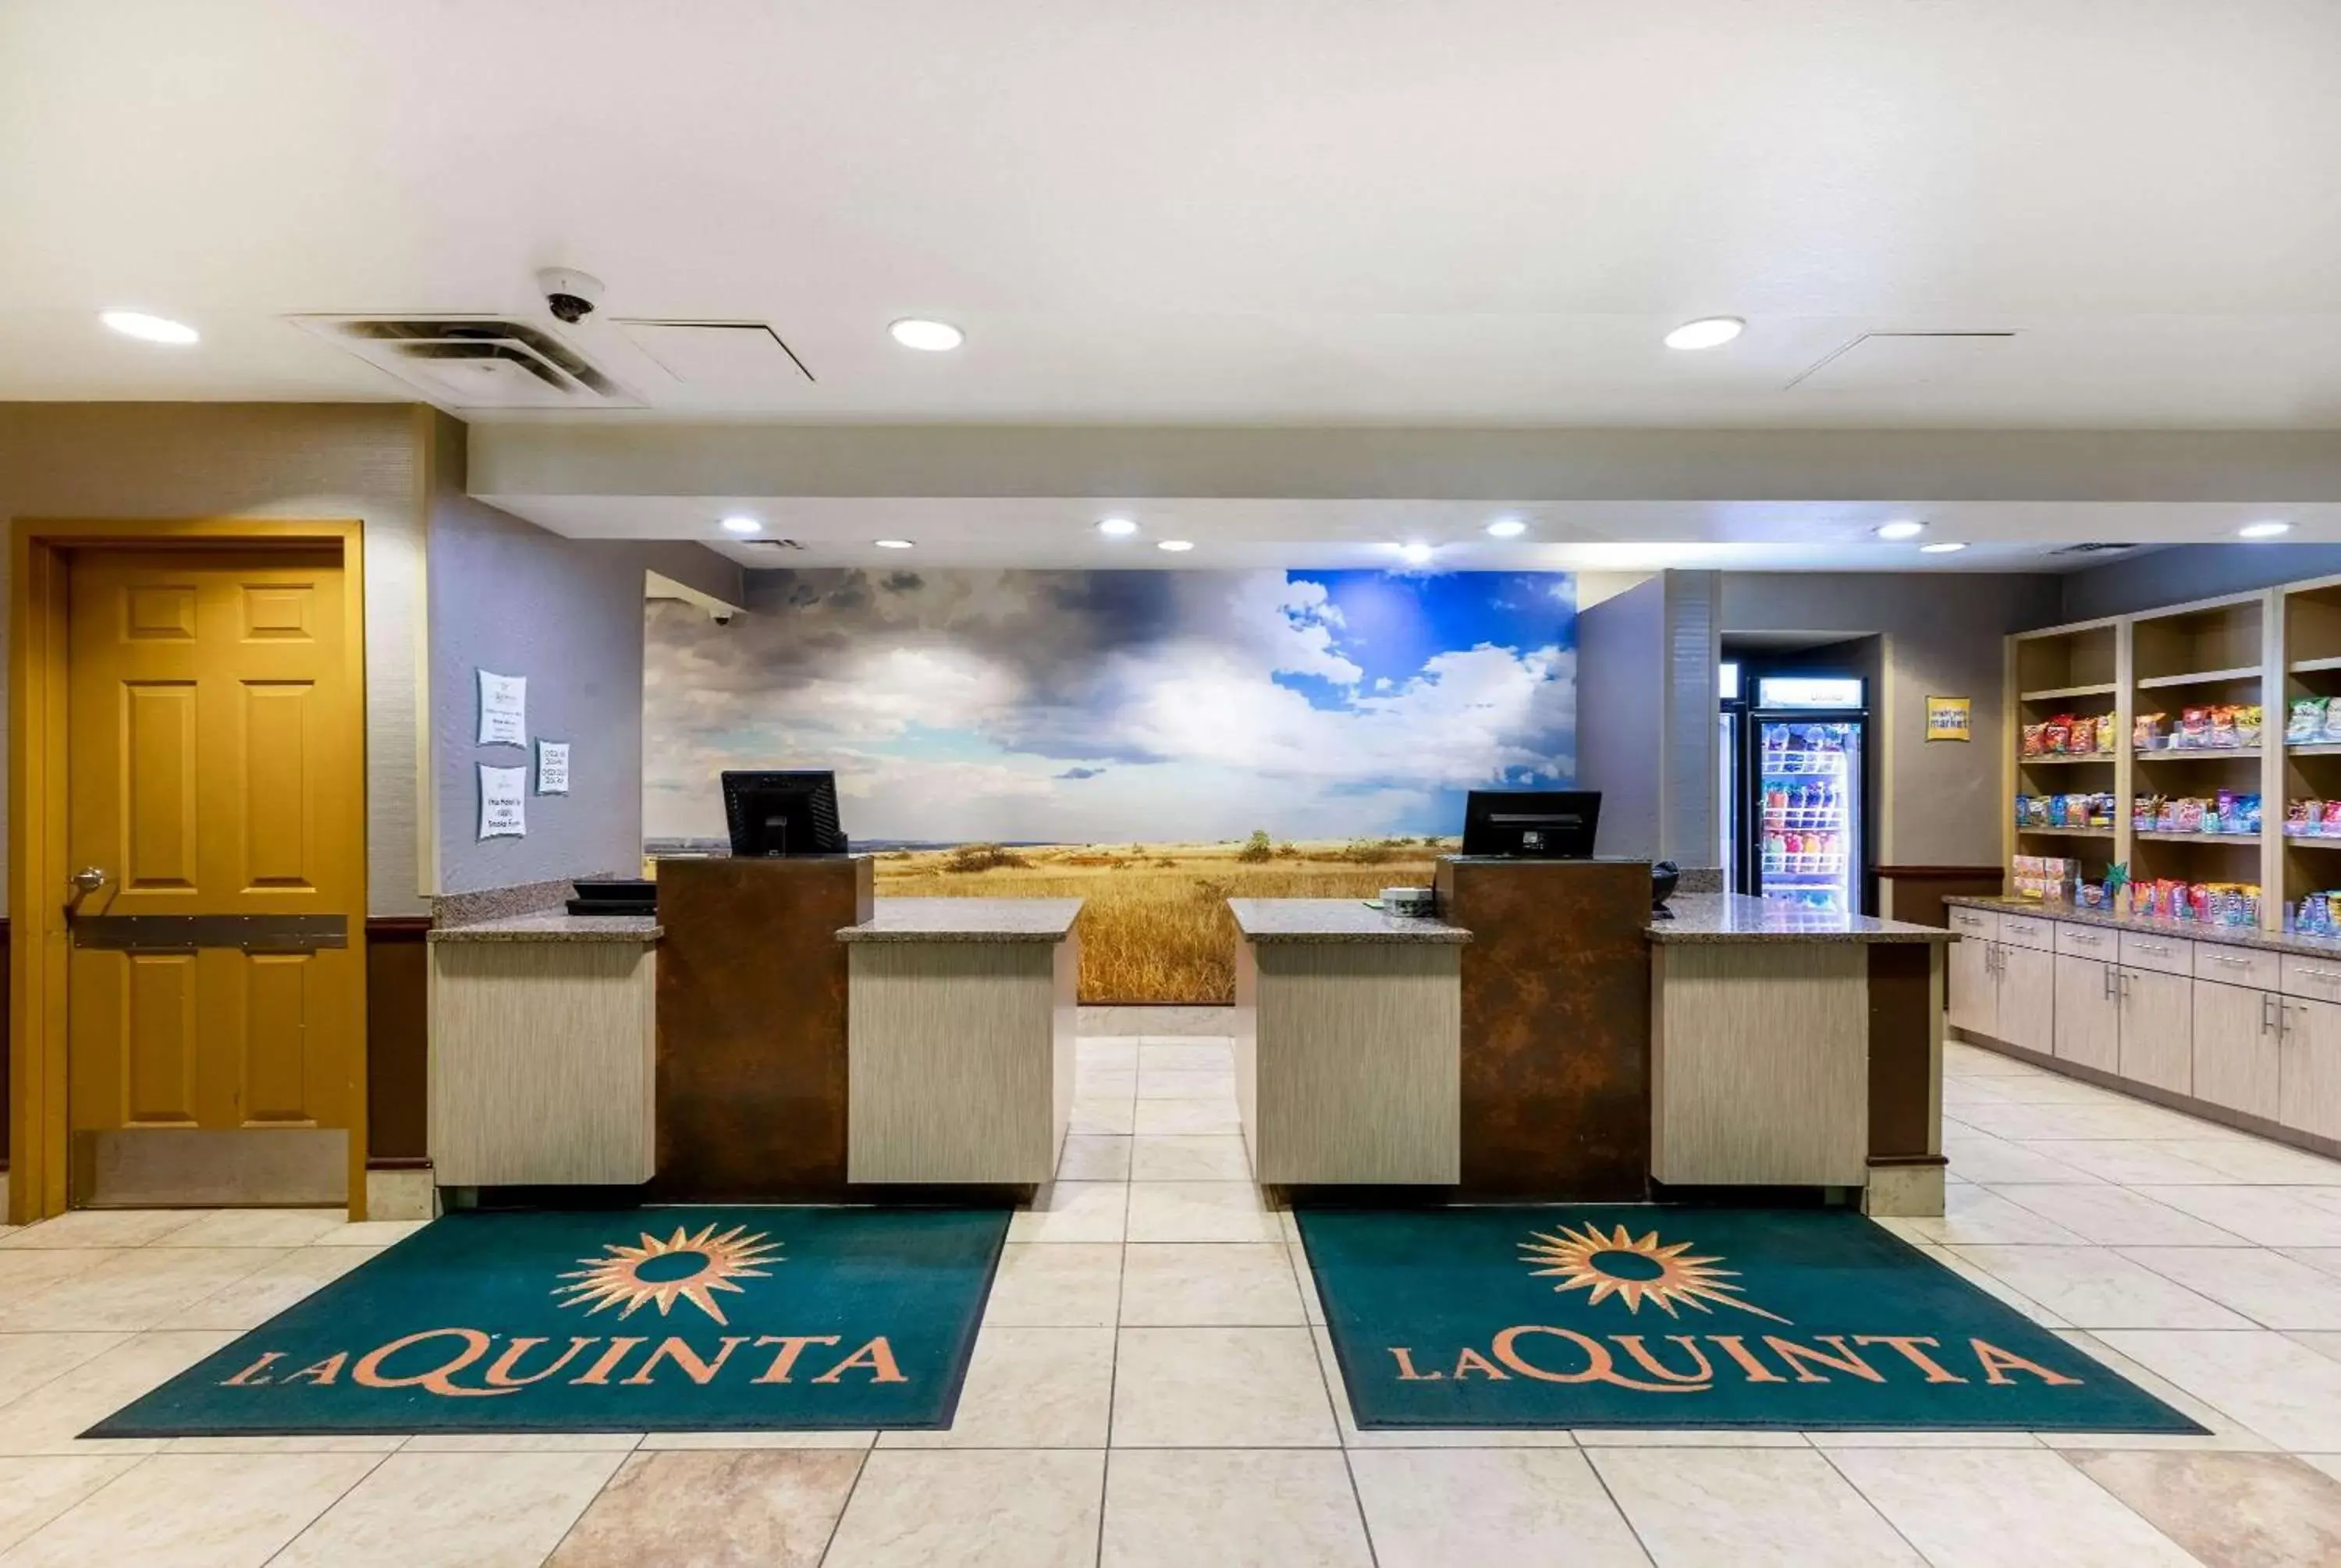 Lobby or reception, Lobby/Reception in La Quinta by Wyndham Olathe